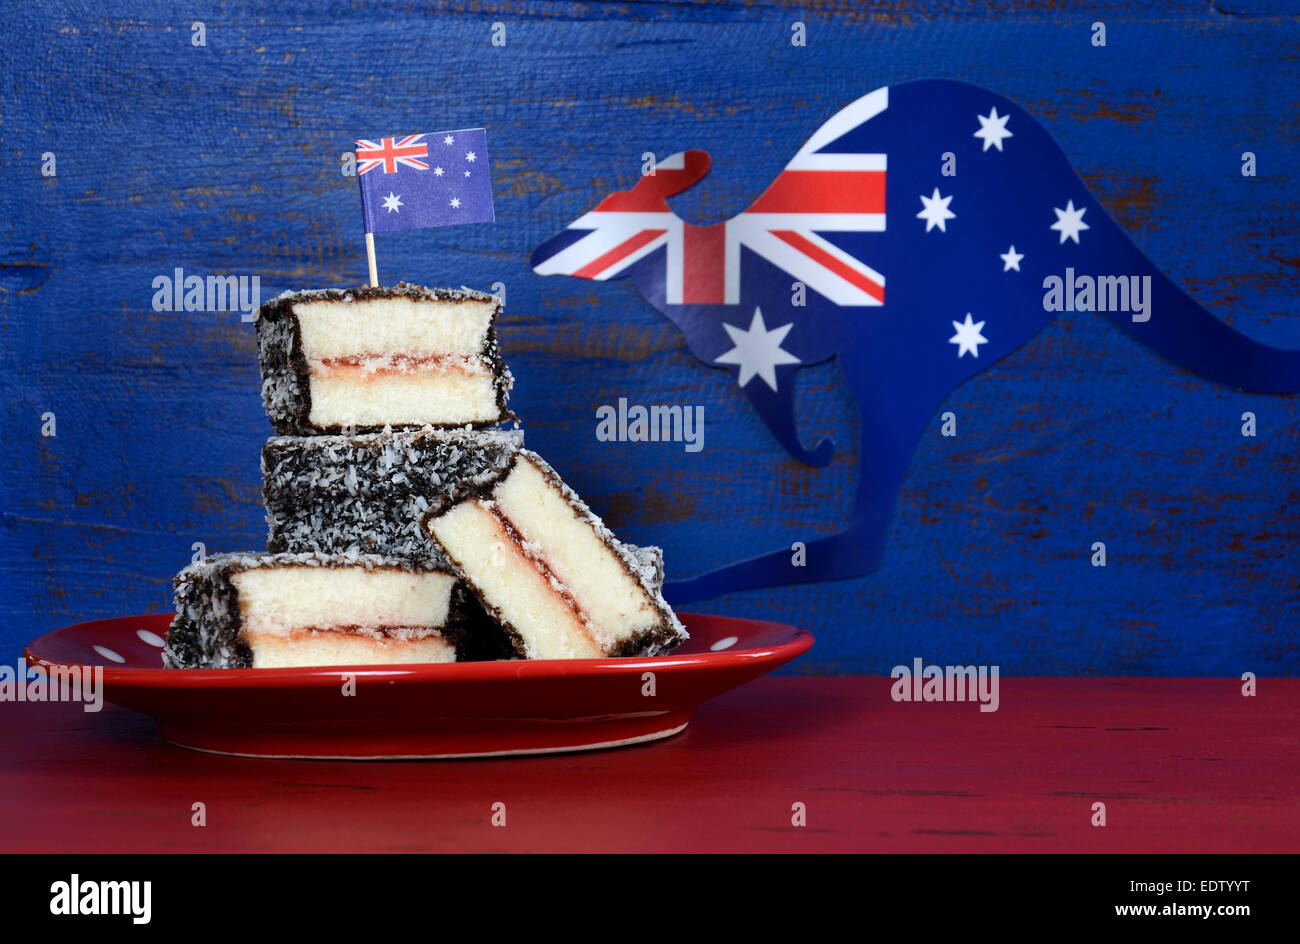 Happy Australia Day January 26 party food with iconic Australian lamington cakes Stock Photo